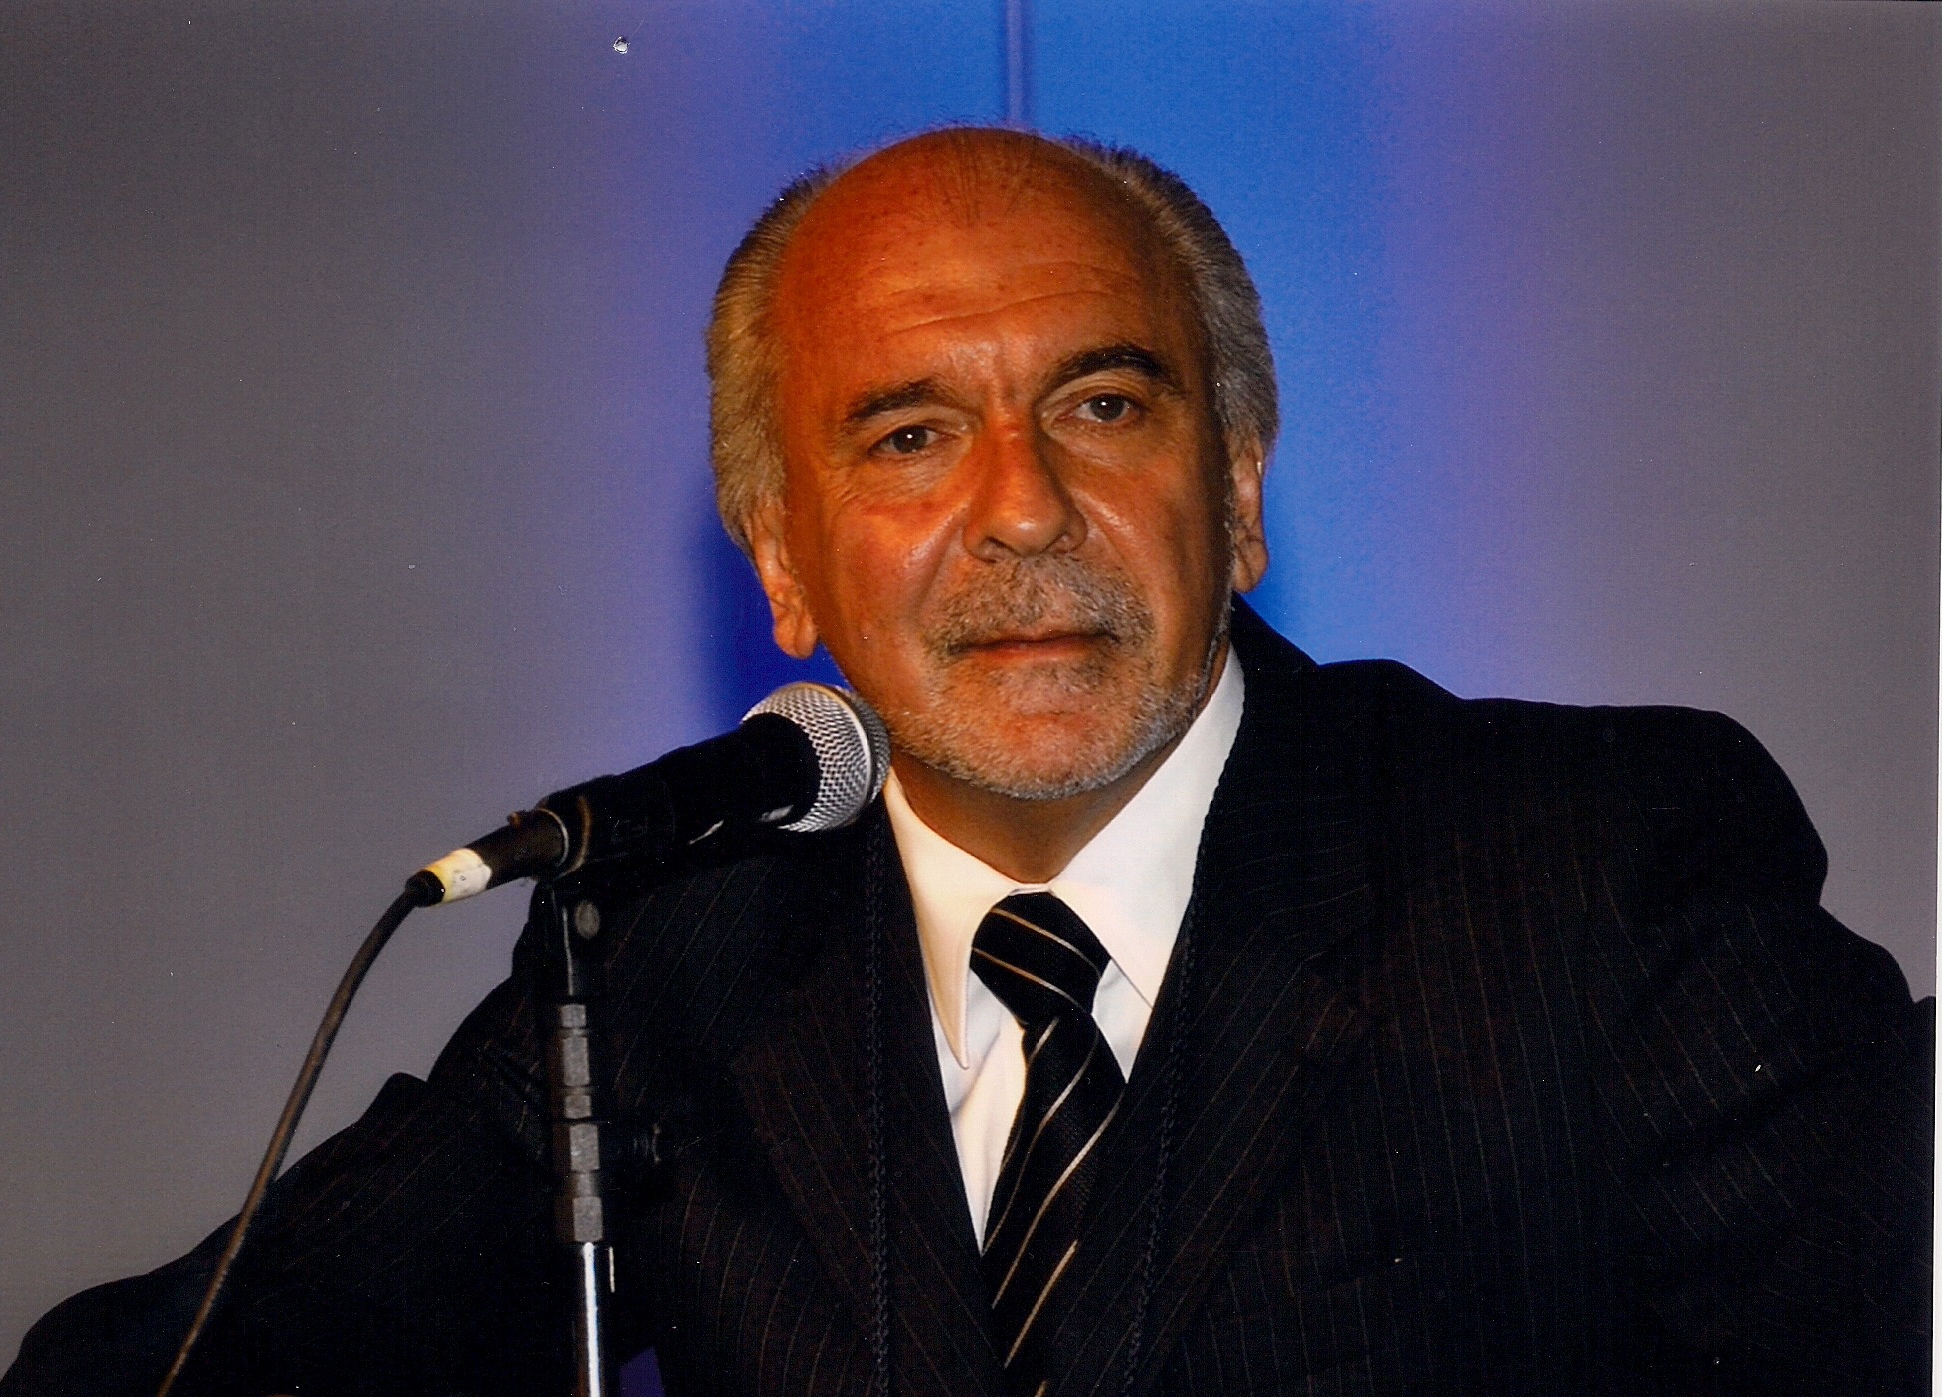  Carlos Alberto Pastore